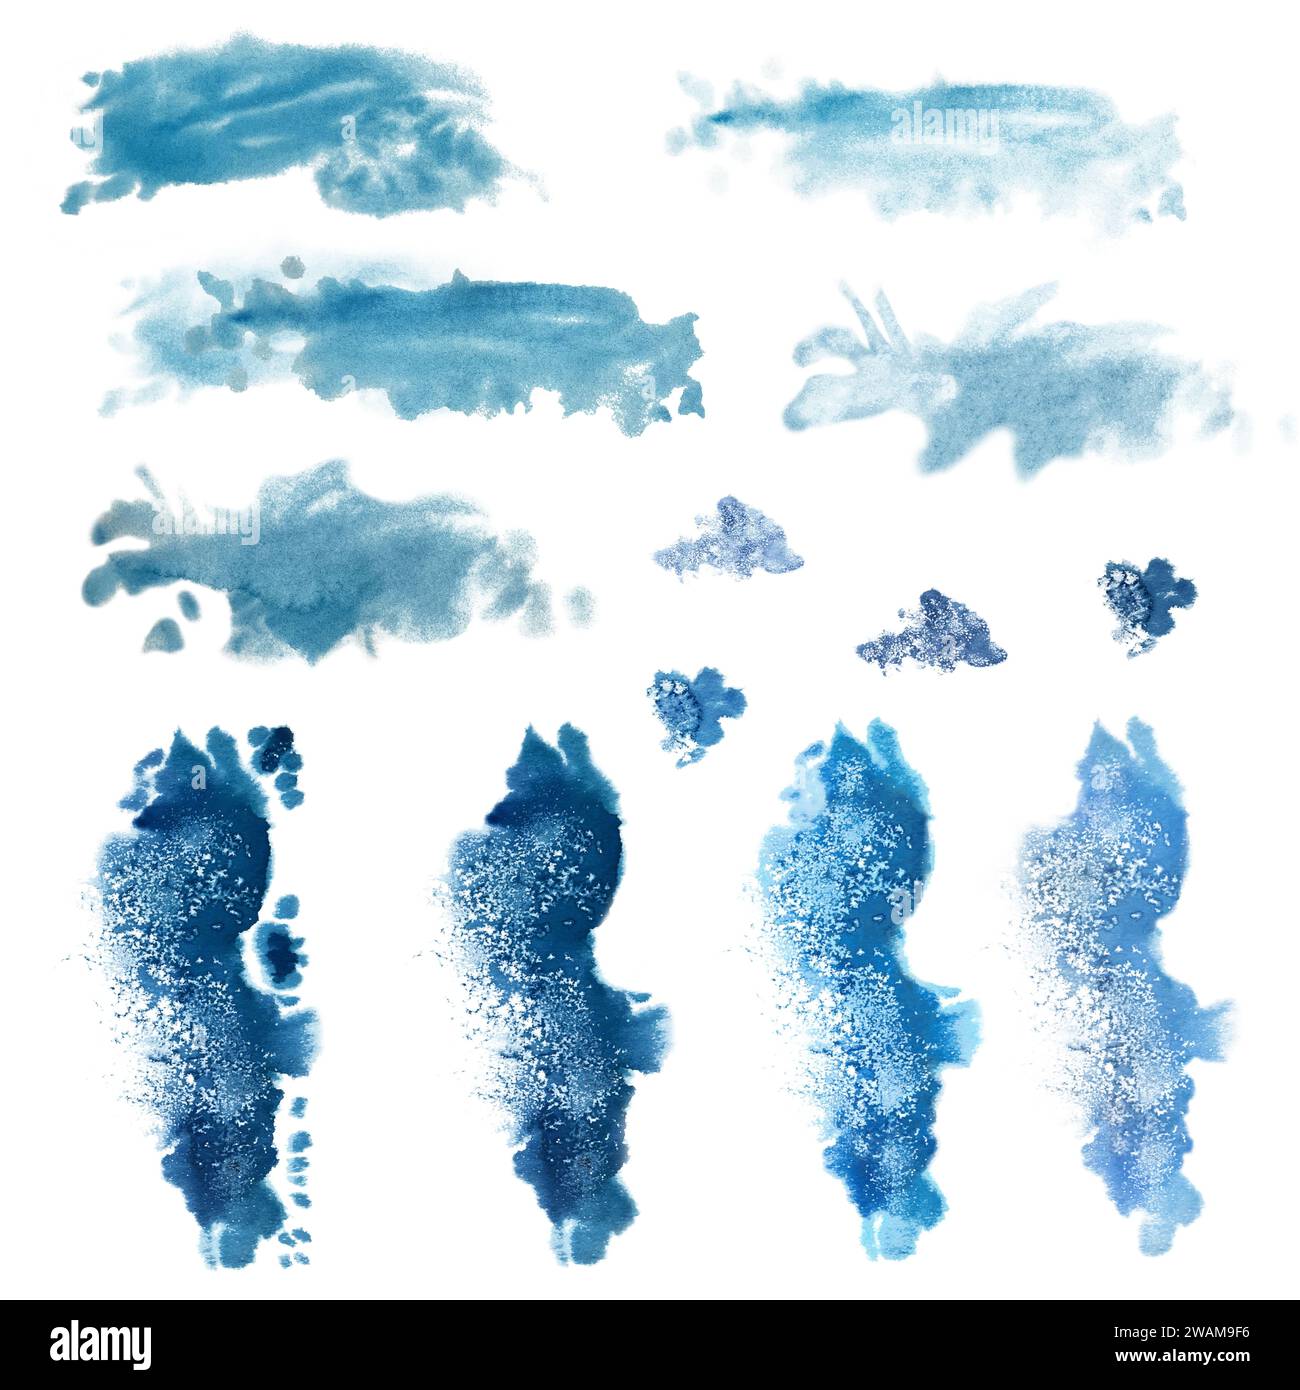 Aquarellblaue Flecken, Spritzer für das Bild des Meeres, Wellen, Himmel, Wolken, Nebel, Hintergrund, abstrakte Meereslandschaften mit Textur. Die Abbildungen sind isol Stockfoto